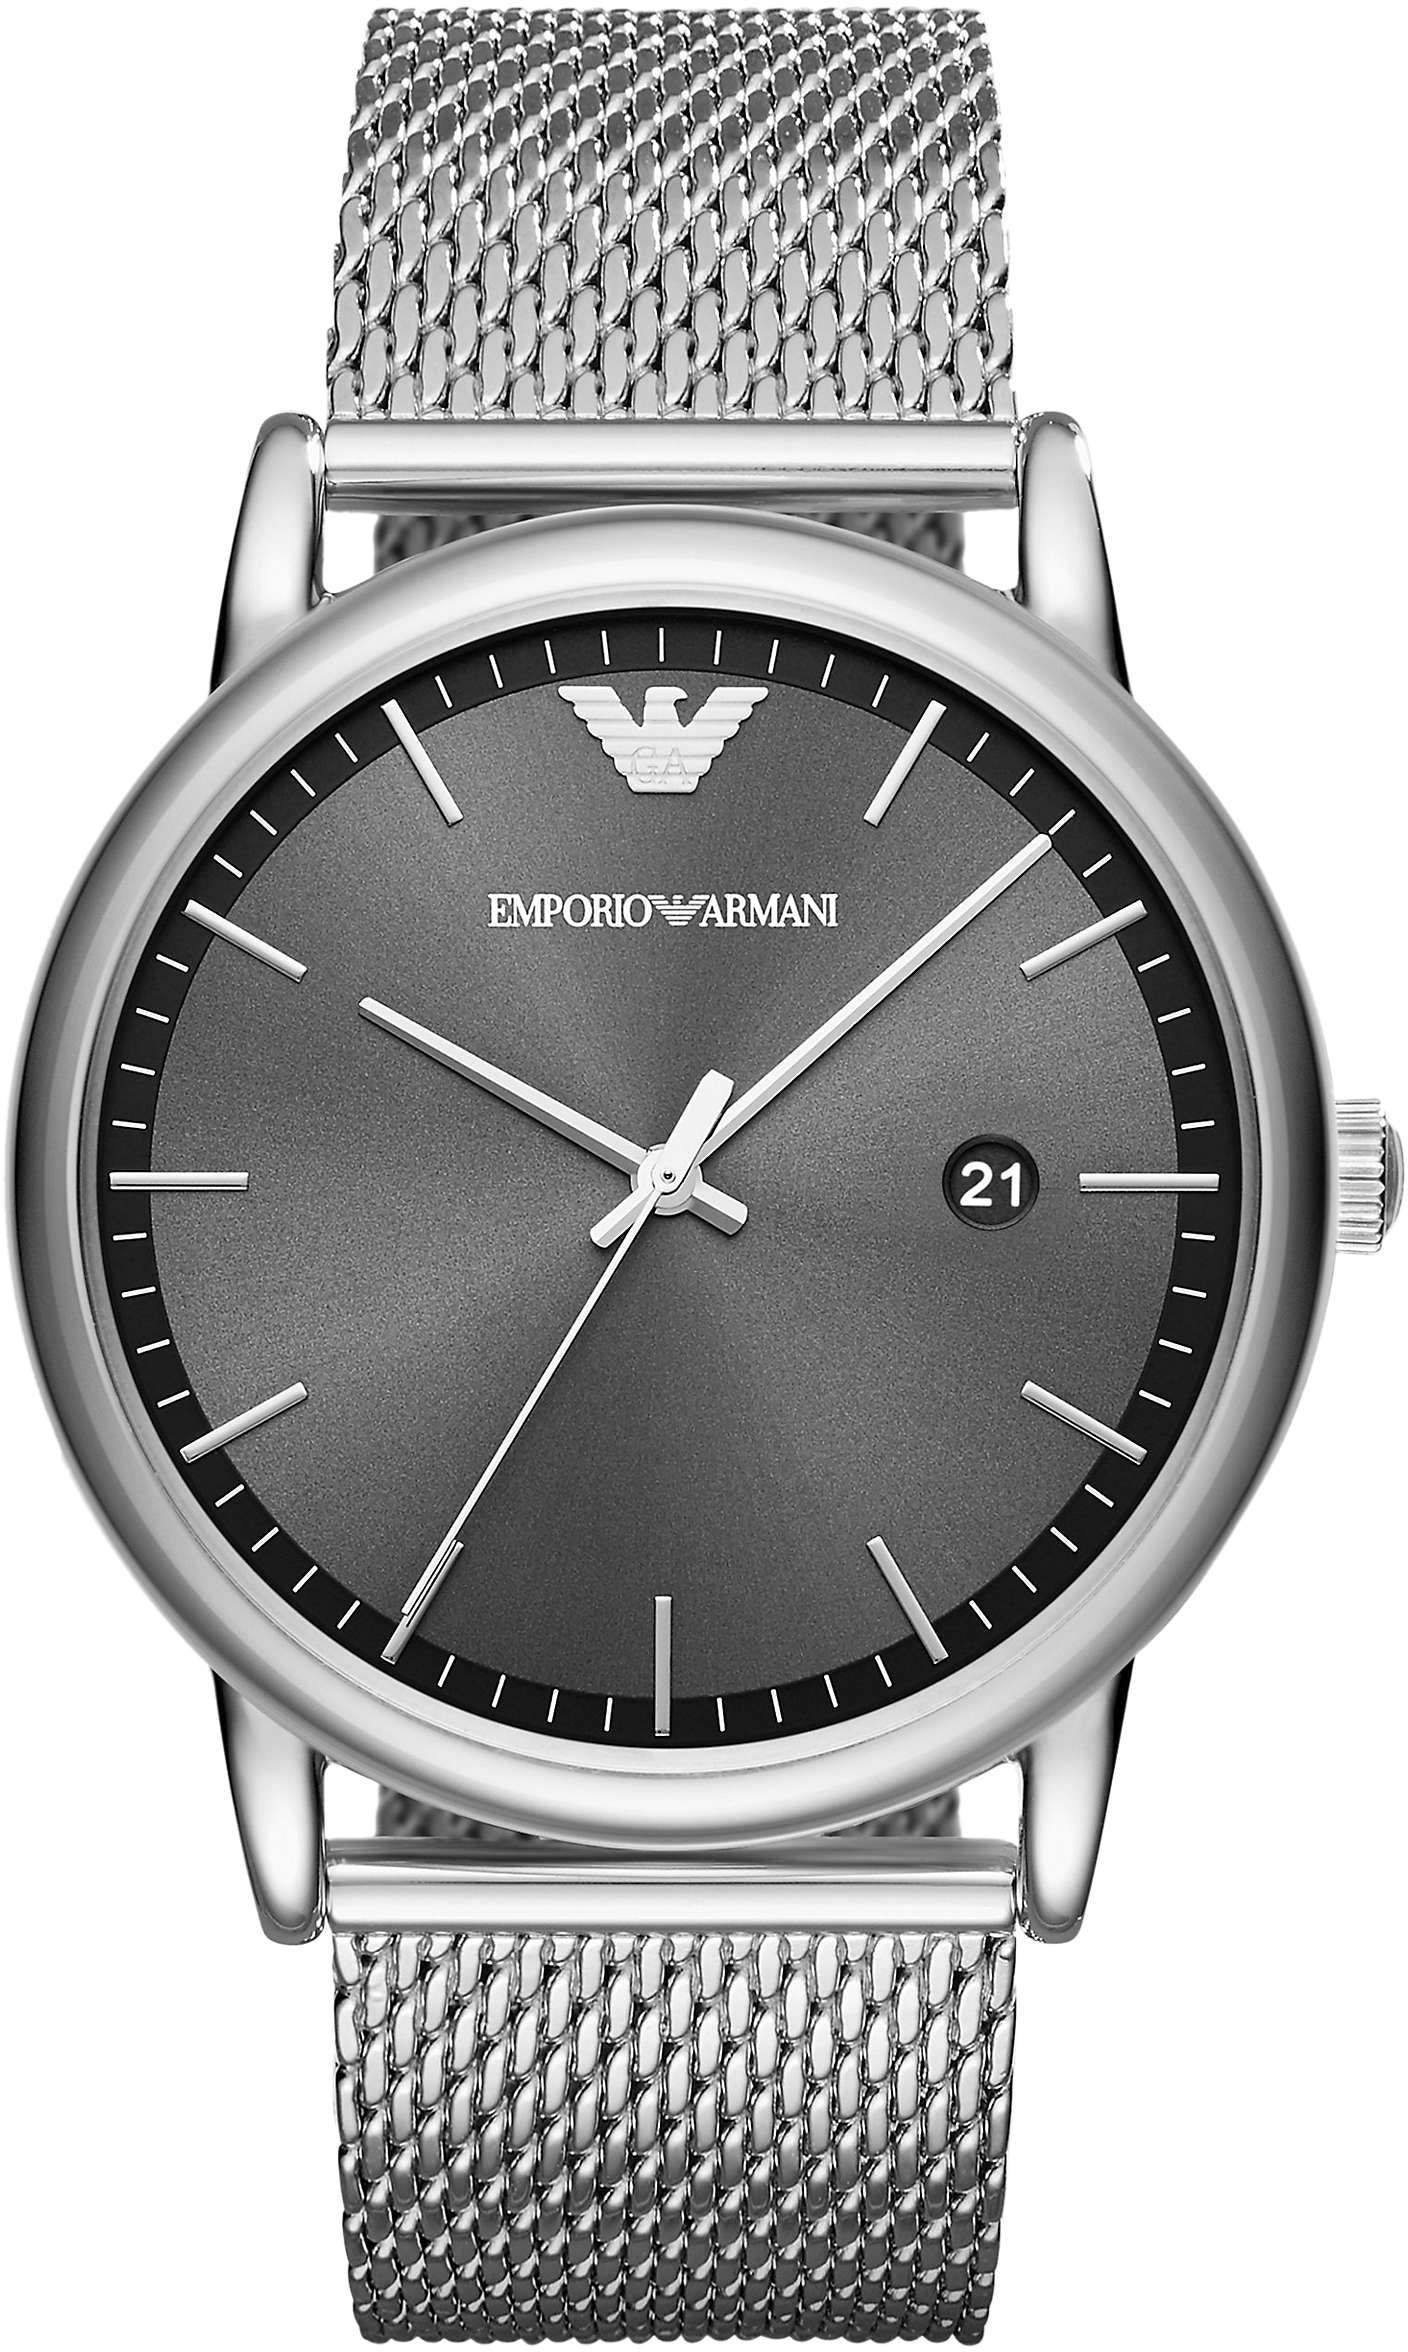 Photos - Wrist Watch Armani Emporio  Watch Luigi Mens - Grey EA-339 